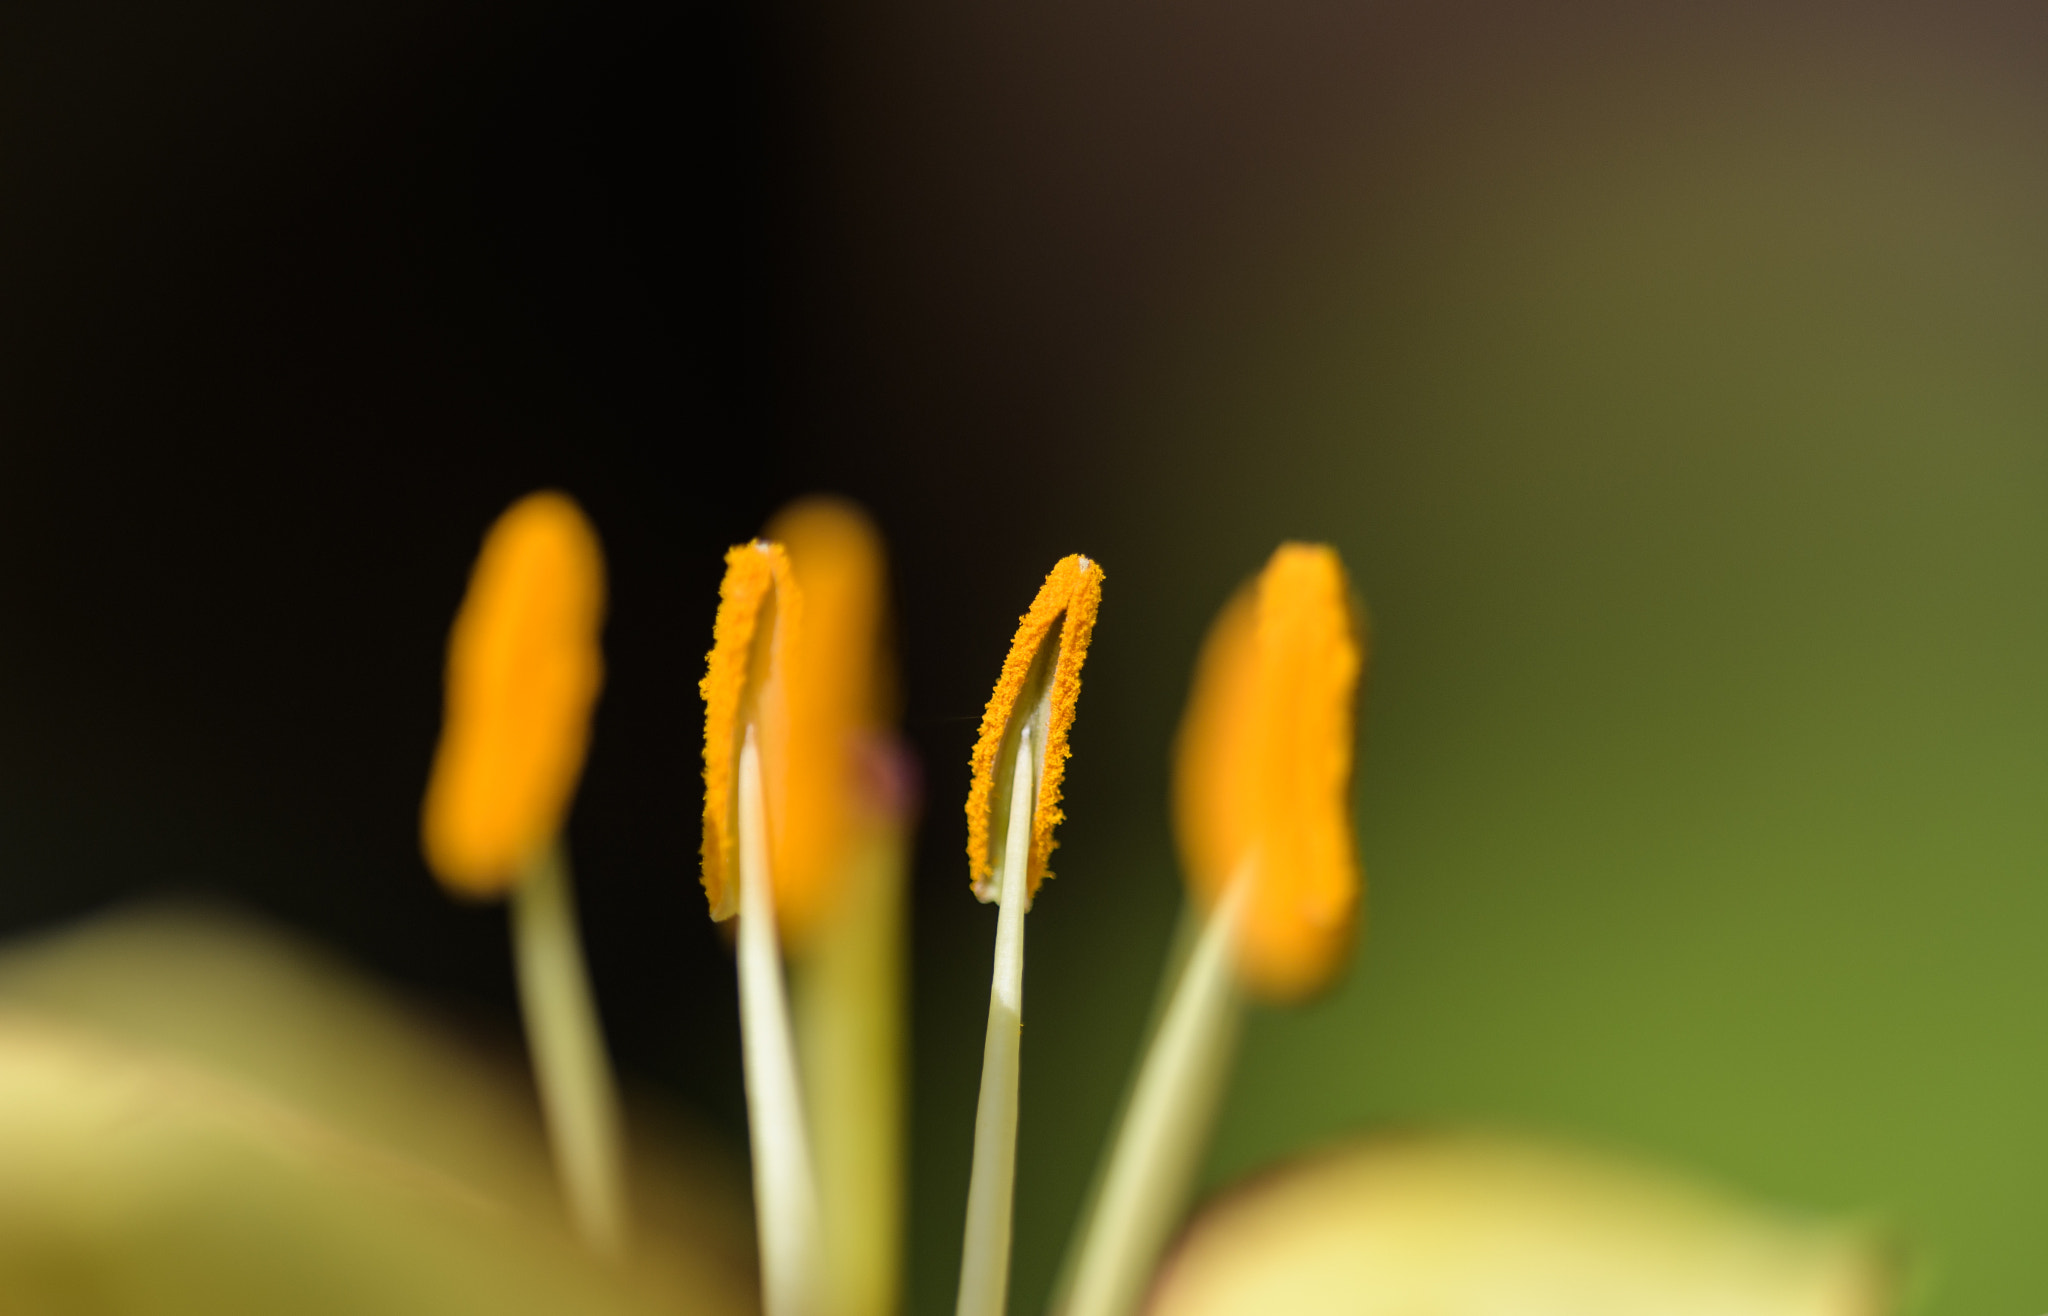 Nikon D500 sample photo. Inner flower photography